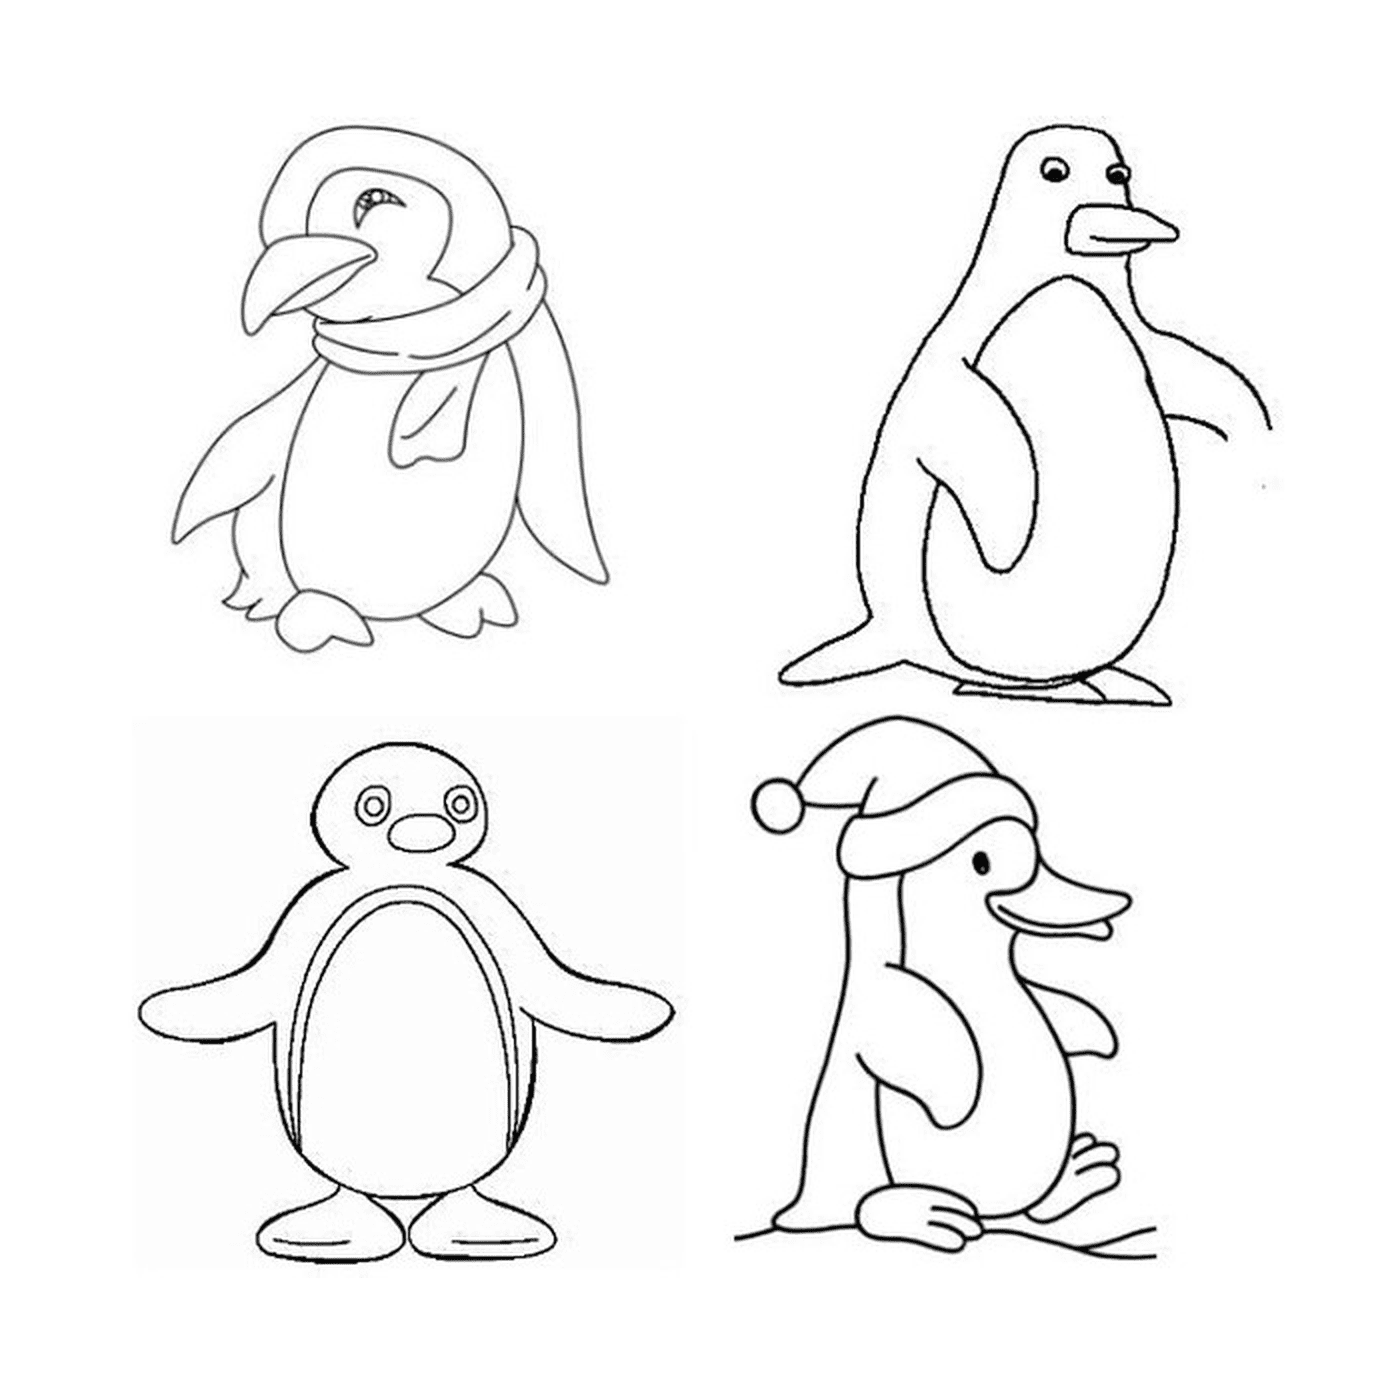  Четыре разных пингвина в рисовании 